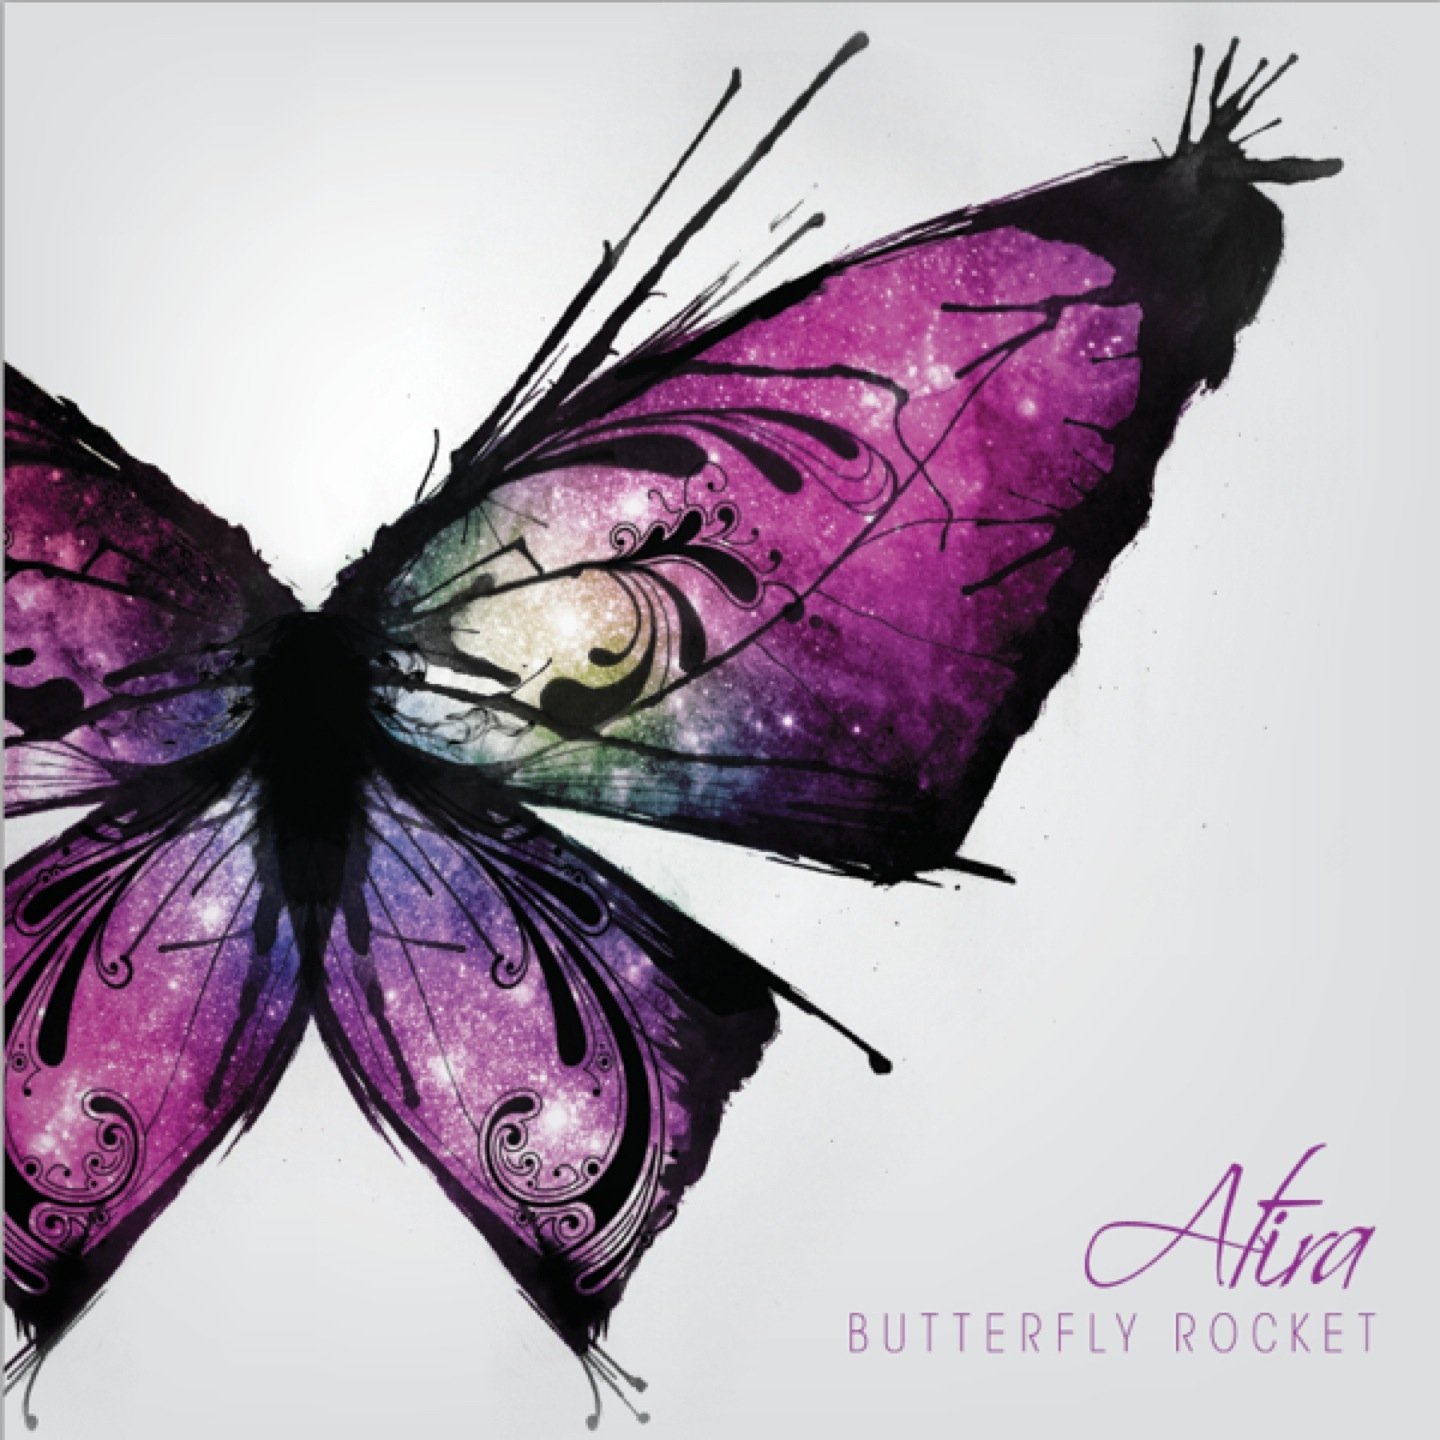 Бабочка обложка. Обложка бабочки. Обложка музыкального альбома с бабочкой. Музыкальная обложка с бабочкой. Рисунок бабочки для обложки.